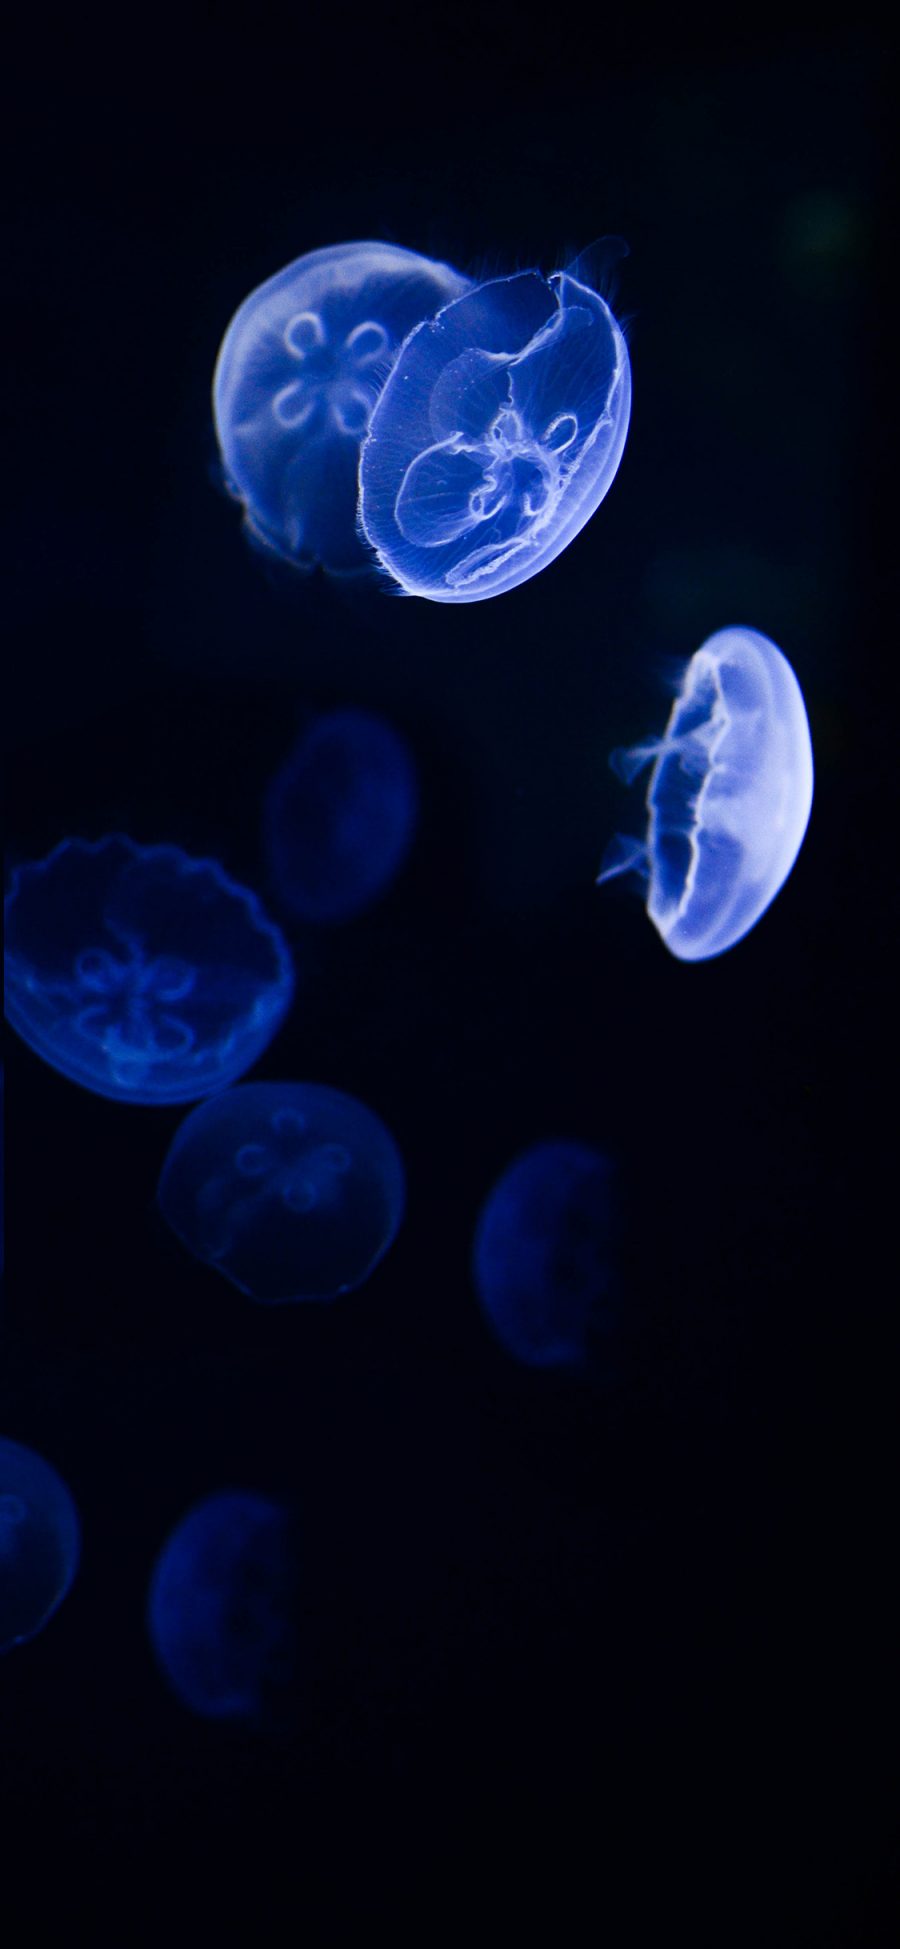 [2436×1125]水母 海洋生物 荧光 漂浮 苹果手机壁纸图片